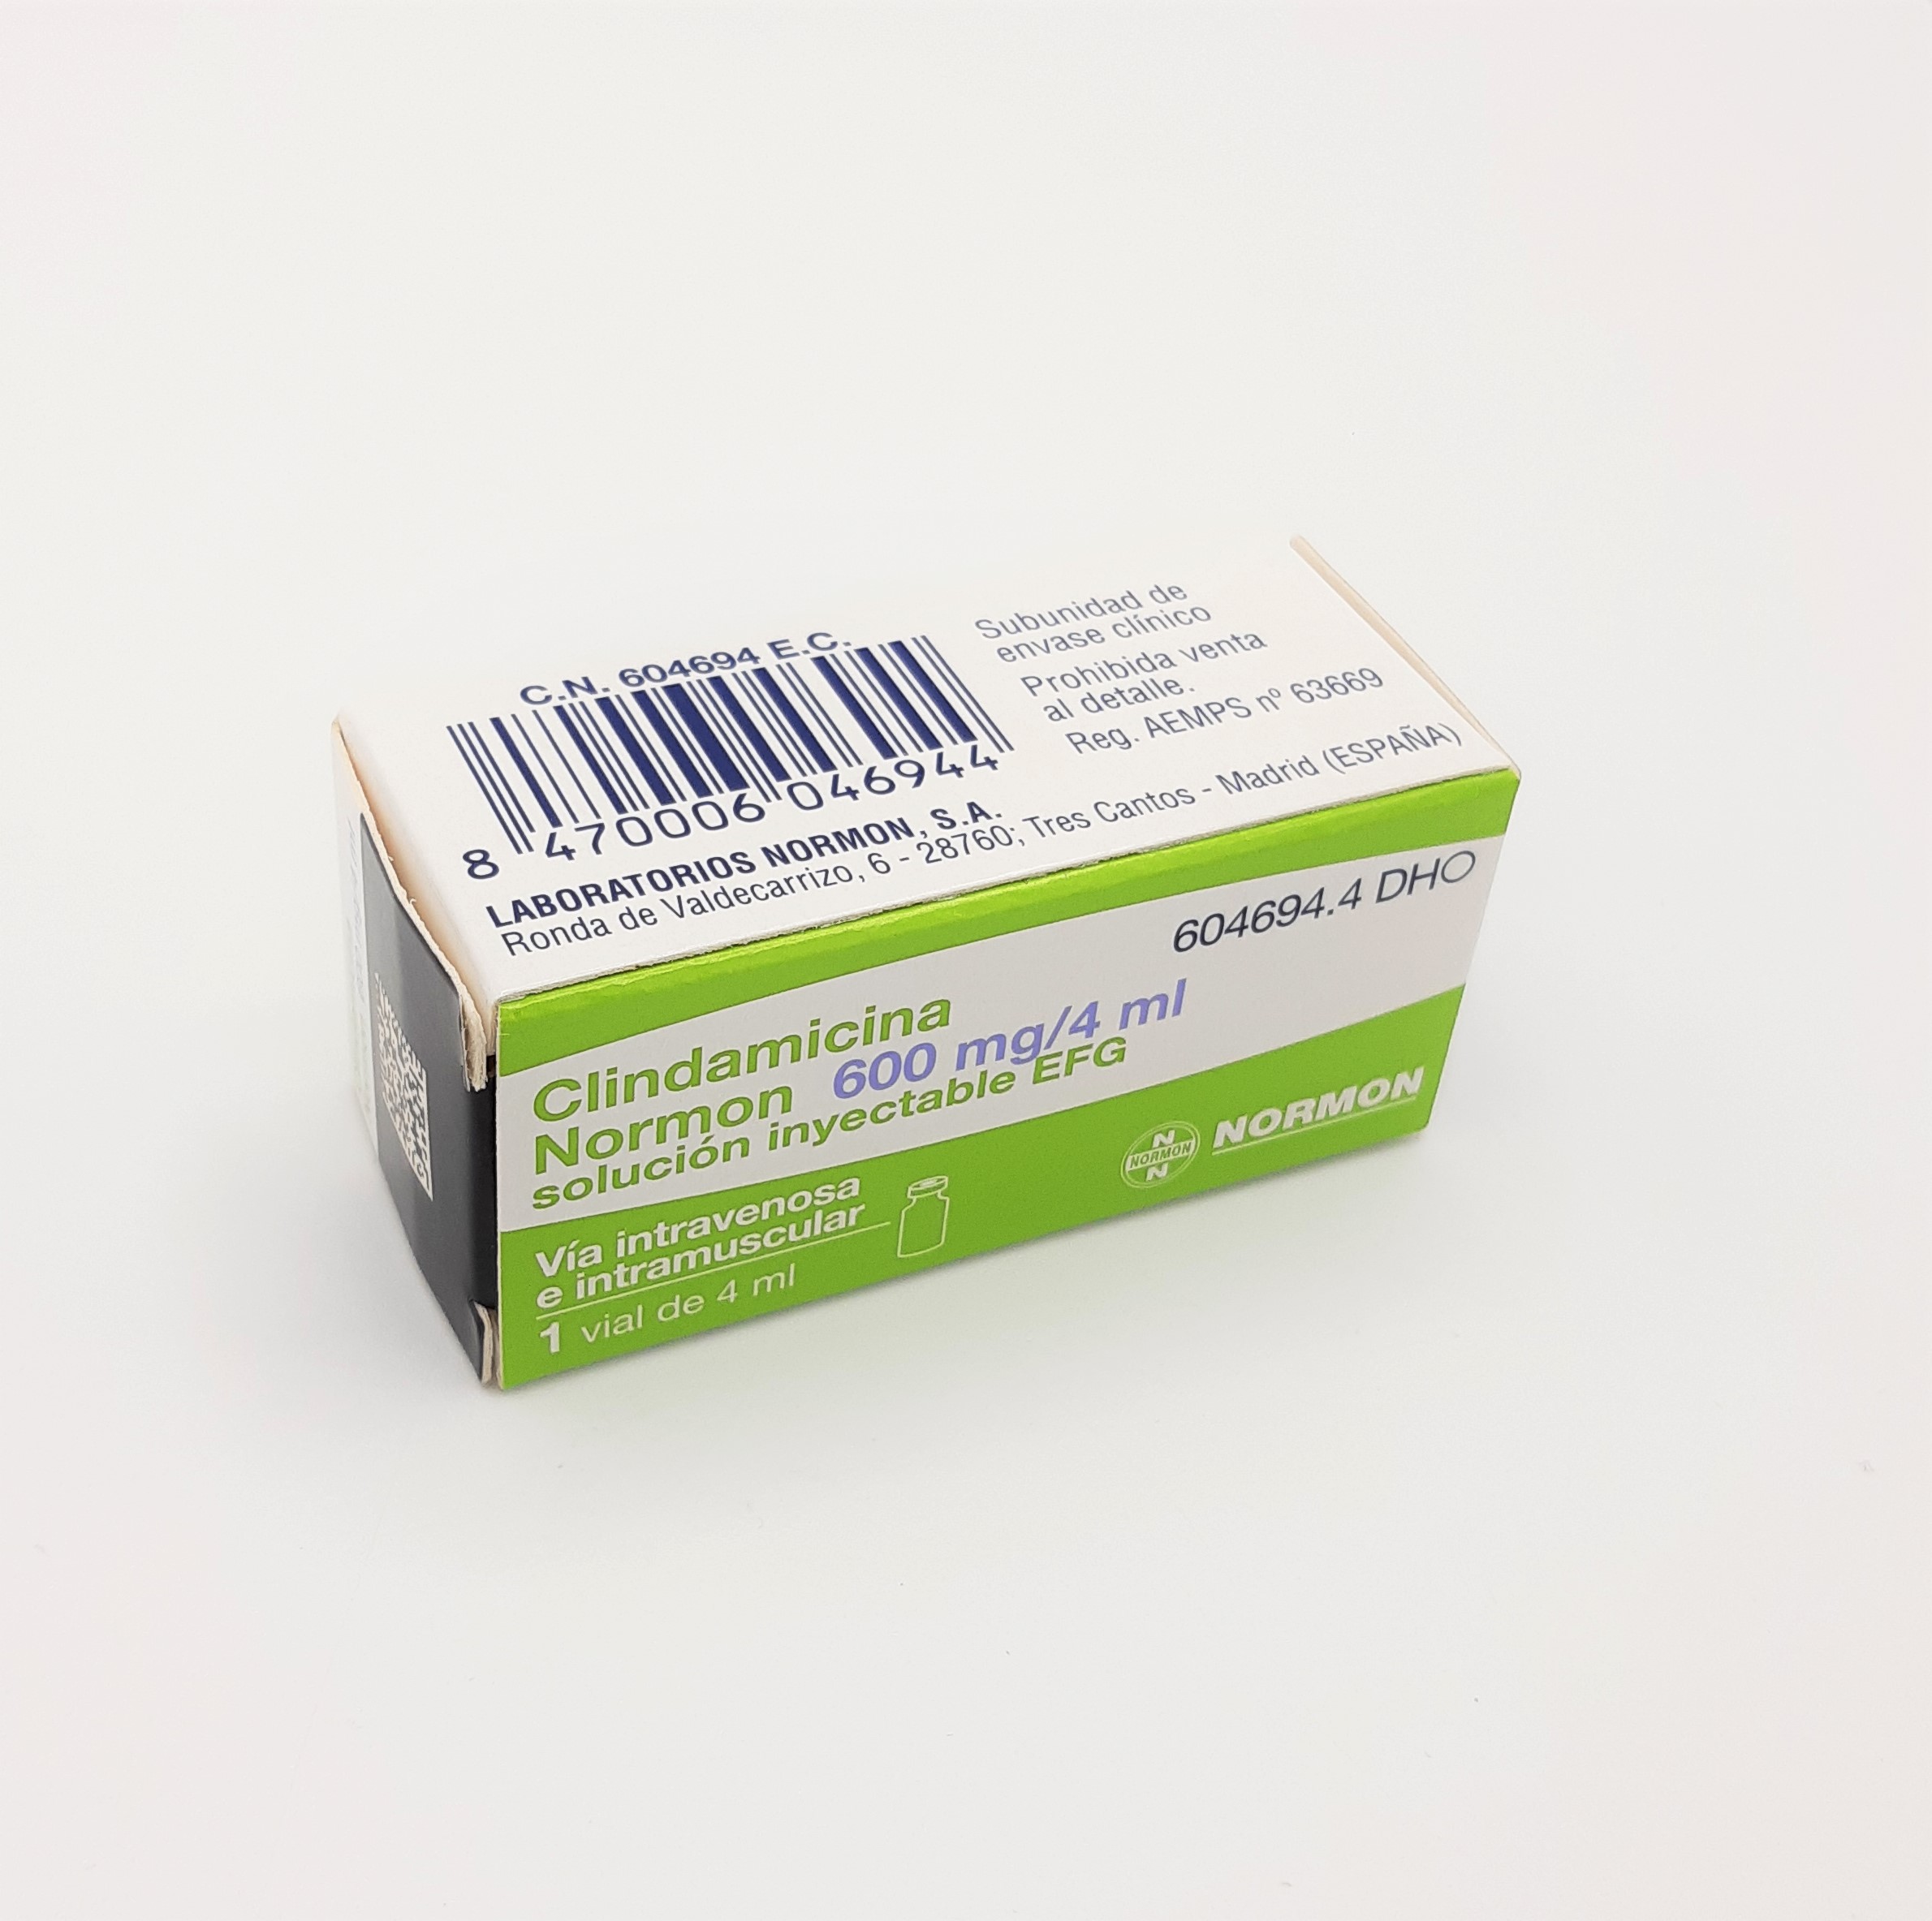 CLINDAMICINA NORMON EFG 600 mg 100 VIALES SOLUCION INYECTABLE 4 ml -  Farmacéuticos